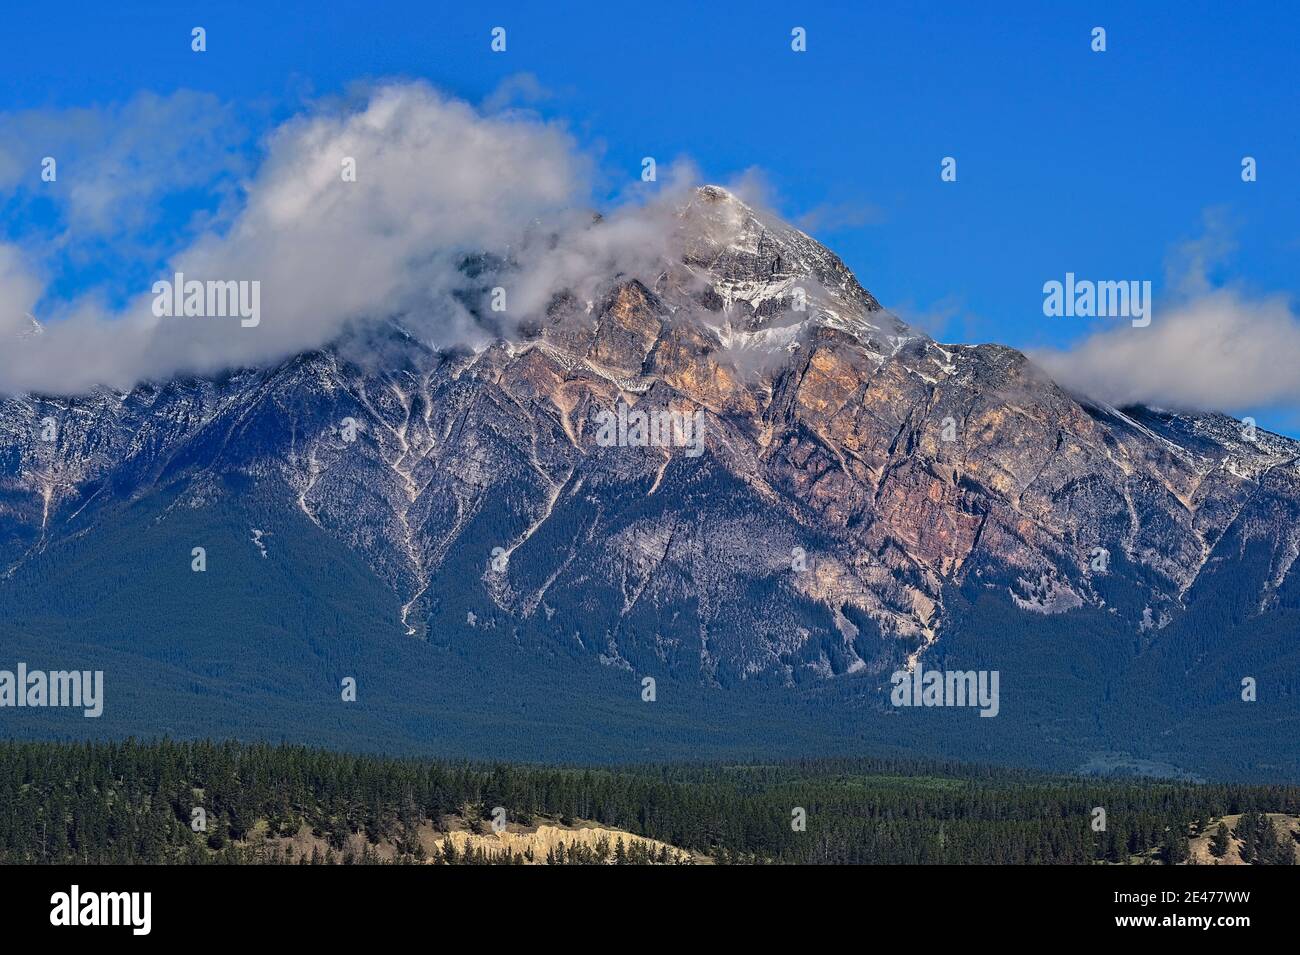 Una imagen del paisaje de la famosa montaña de la Pirámide situada en el Parque Nacional Jasper en un día de verano azul. Foto de stock